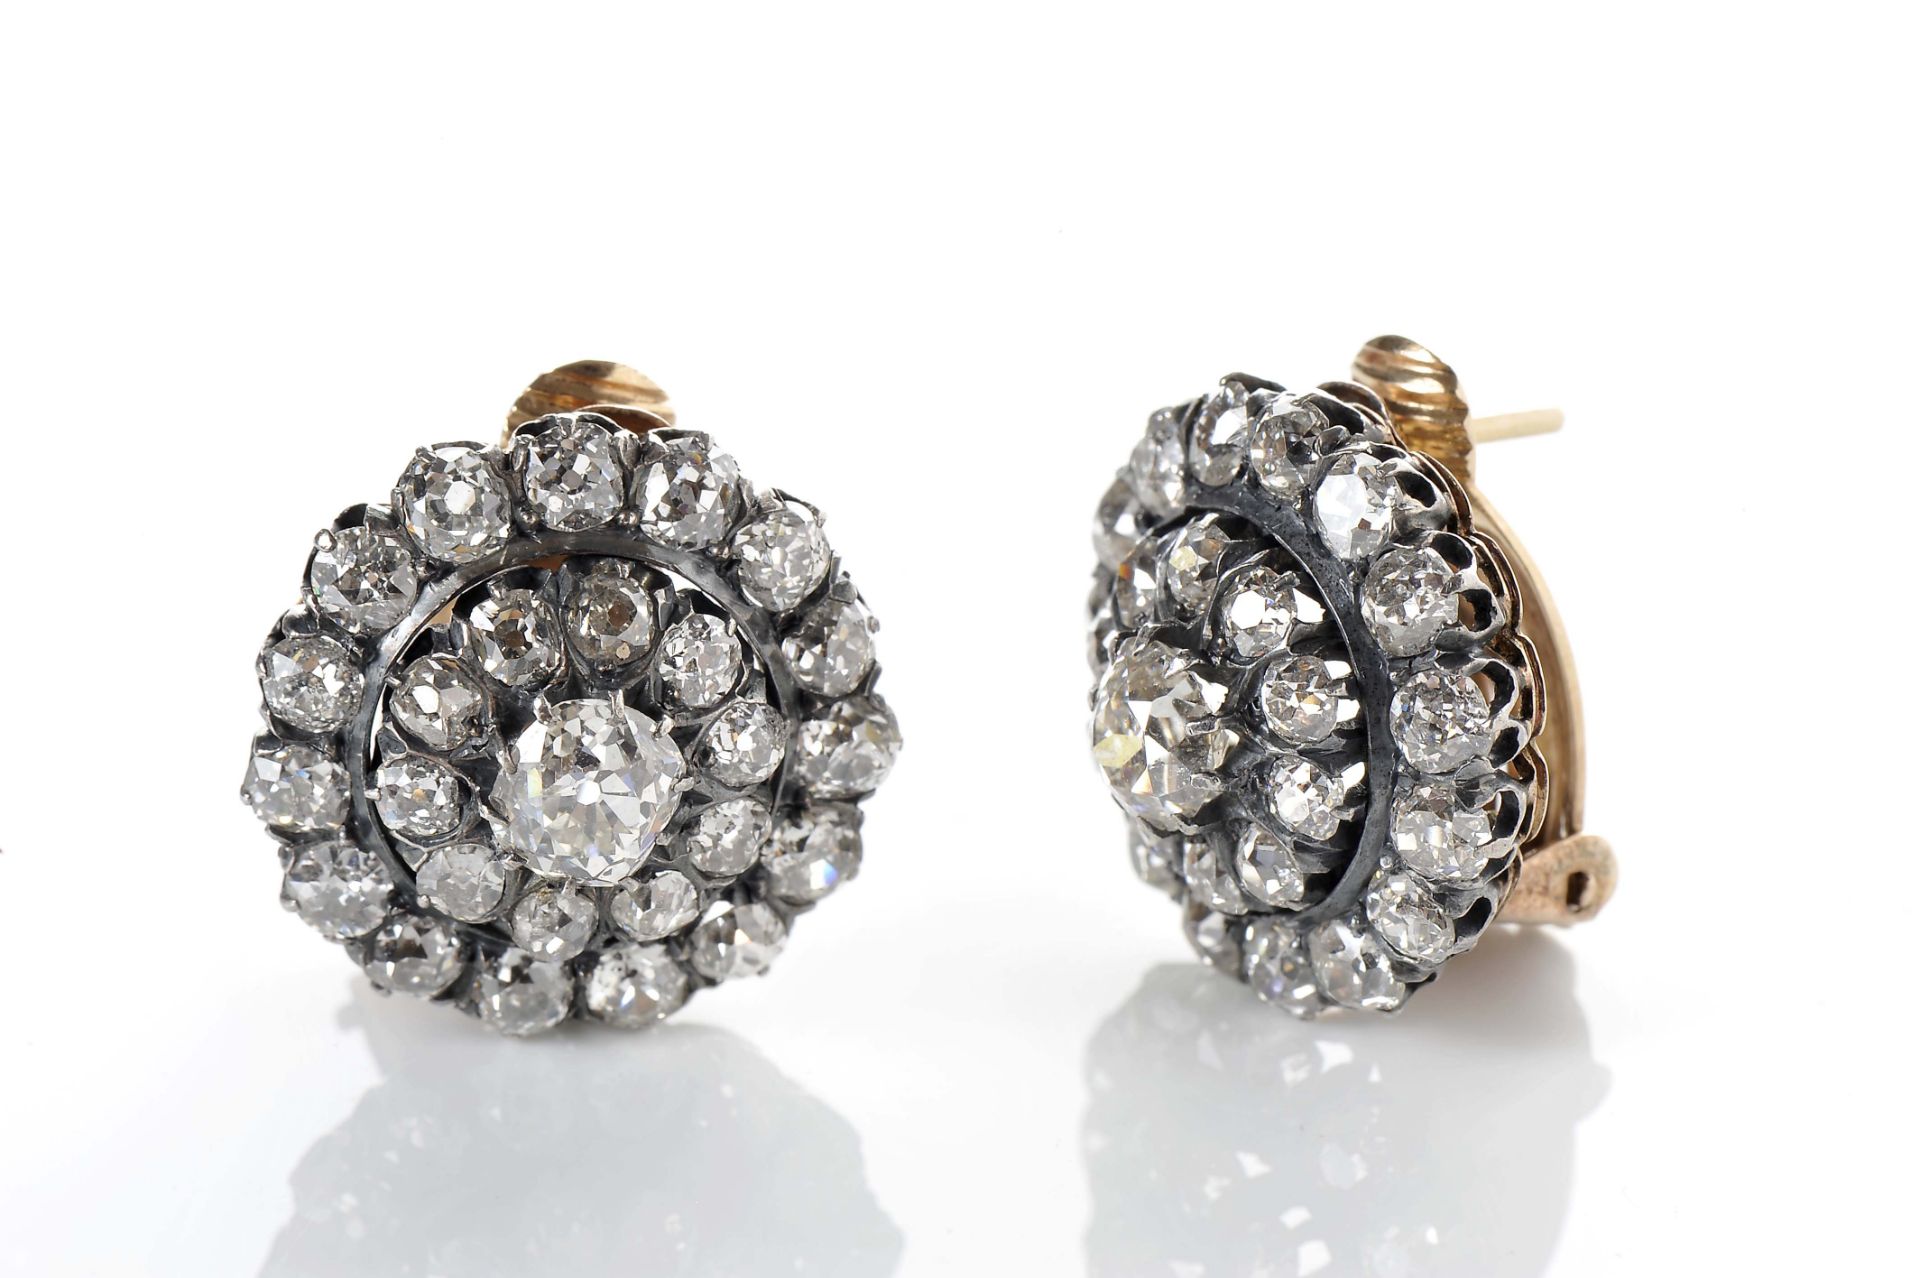 A pair of earrings - Bild 2 aus 3